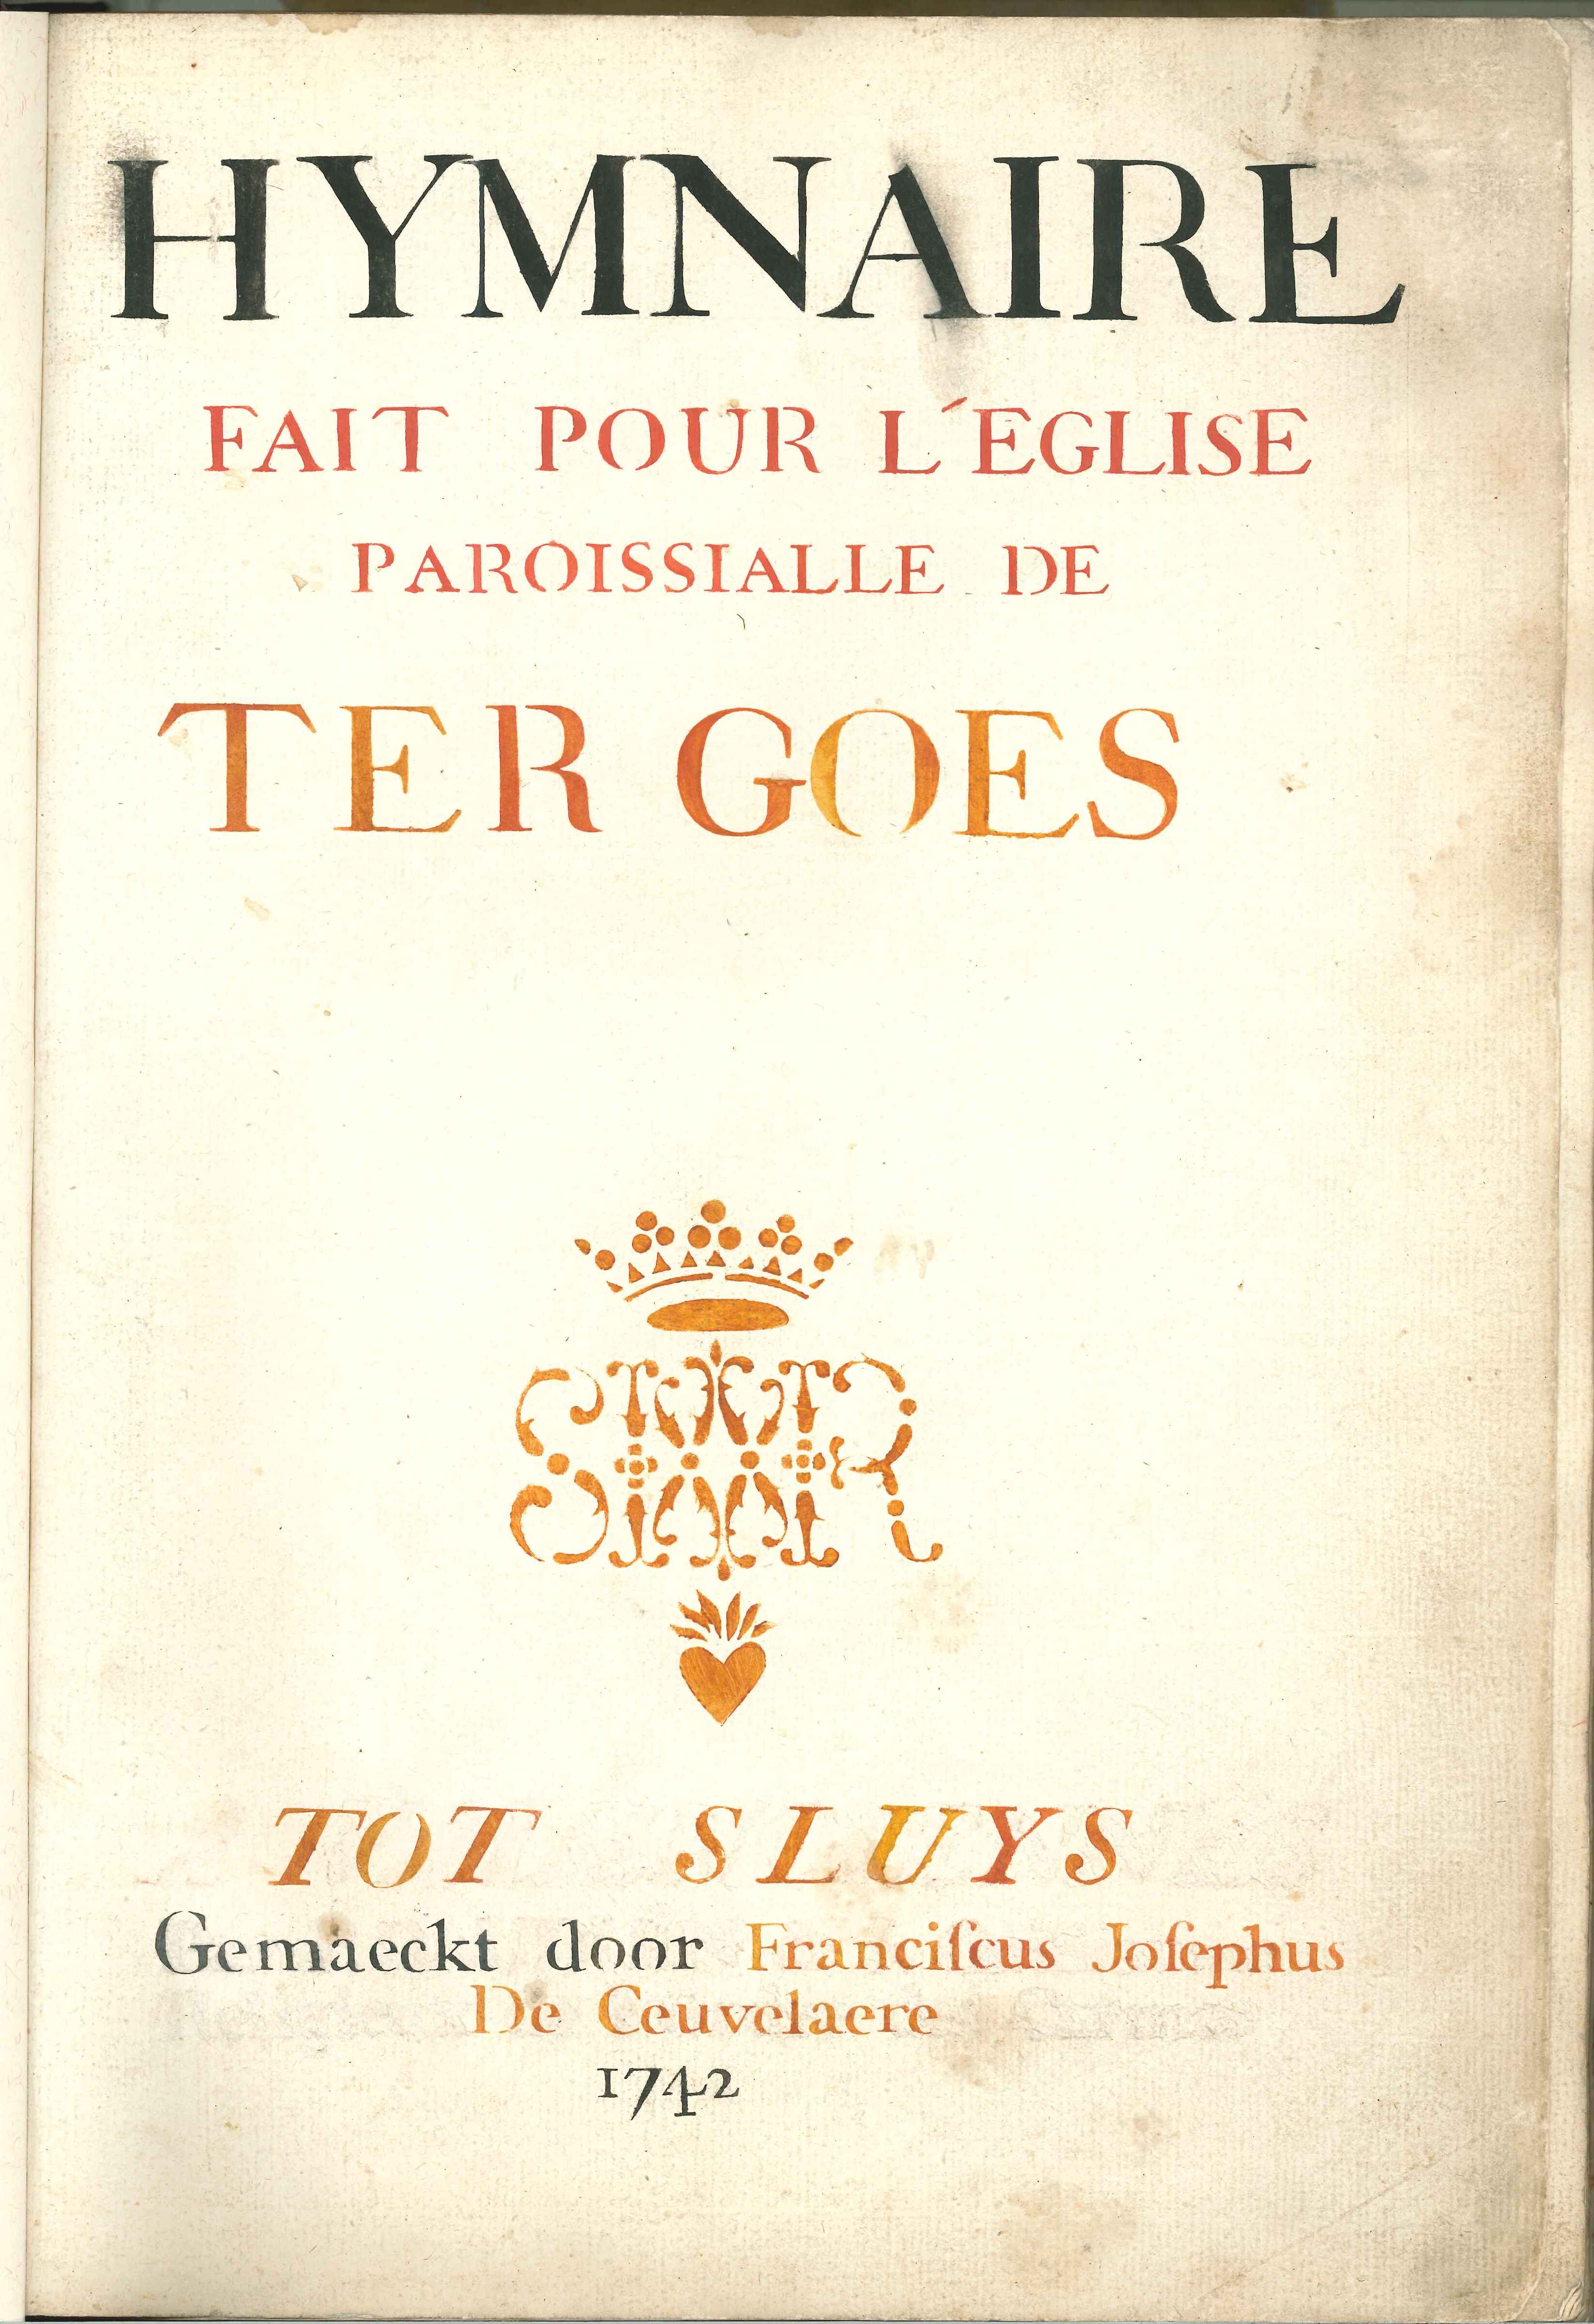 Gezangboek voor de parochie Goes, Sluis 1742.